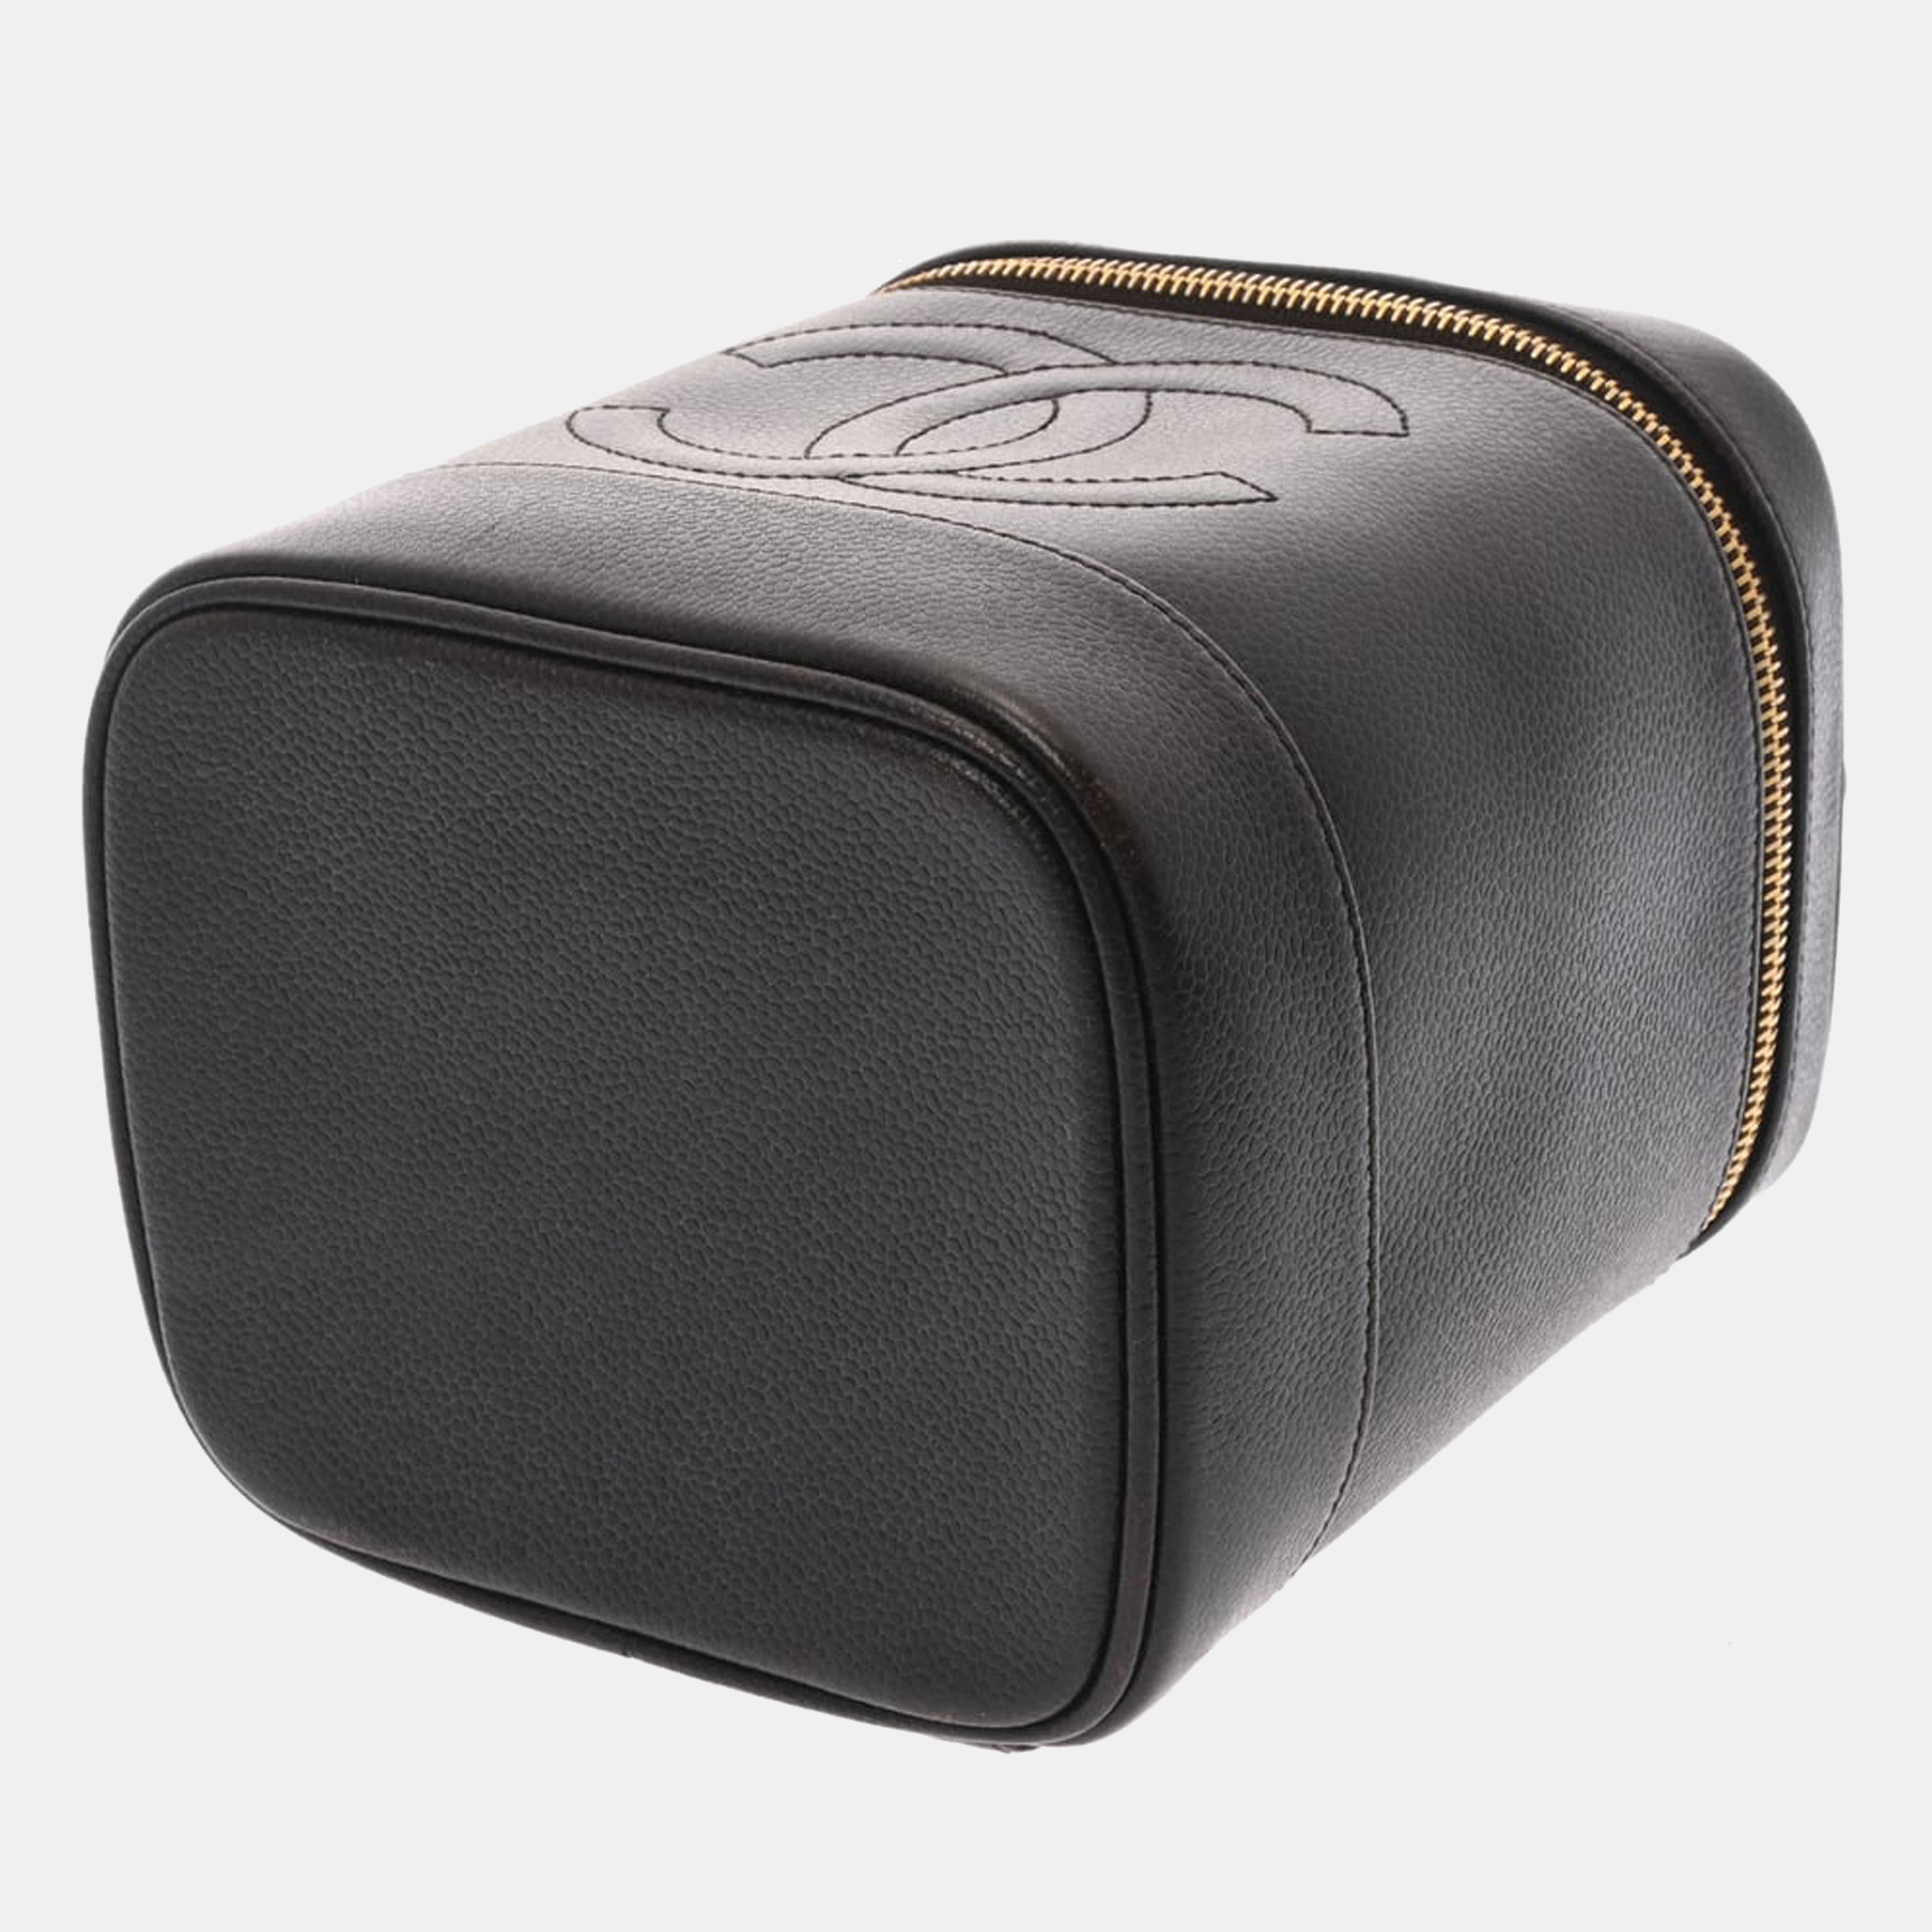 Chanel Black Leather Small Vanity Case Shoulder Bag